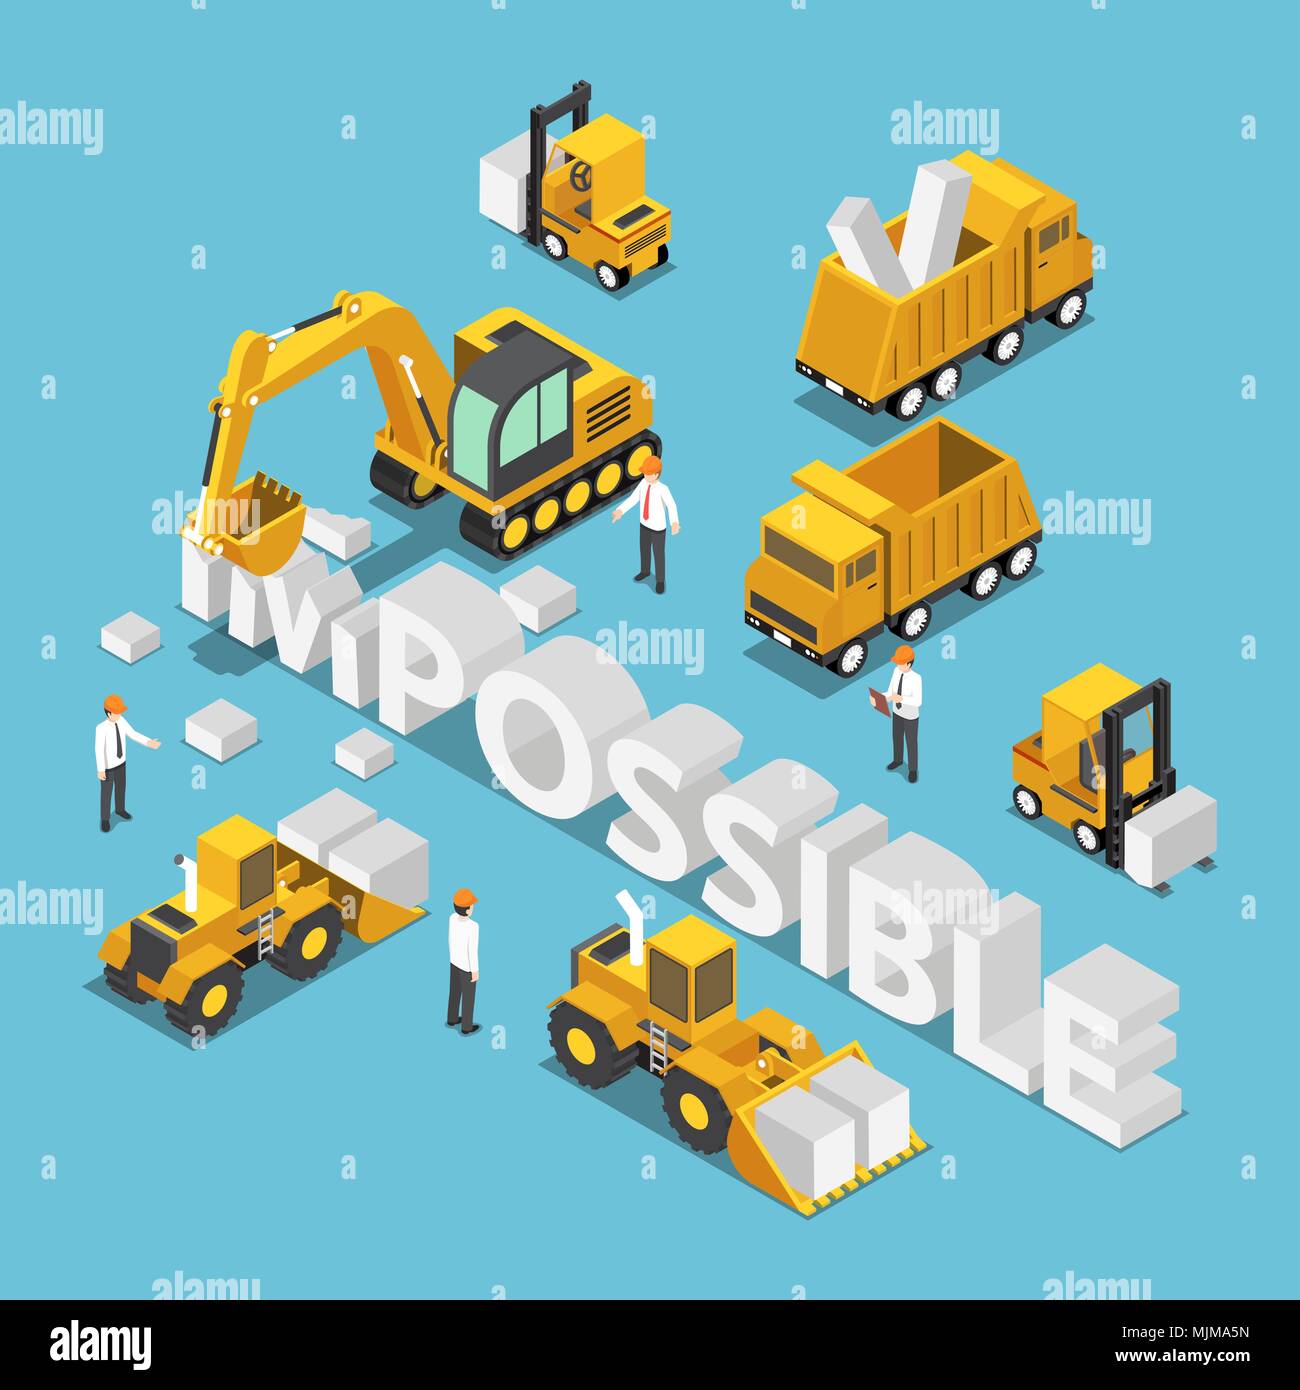 Wohnung 3 d isometrische Baustelle Fahrzeug zerstören und ändern Sie das Wort unmöglich möglich. Business Solution Concept. Stock Vektor